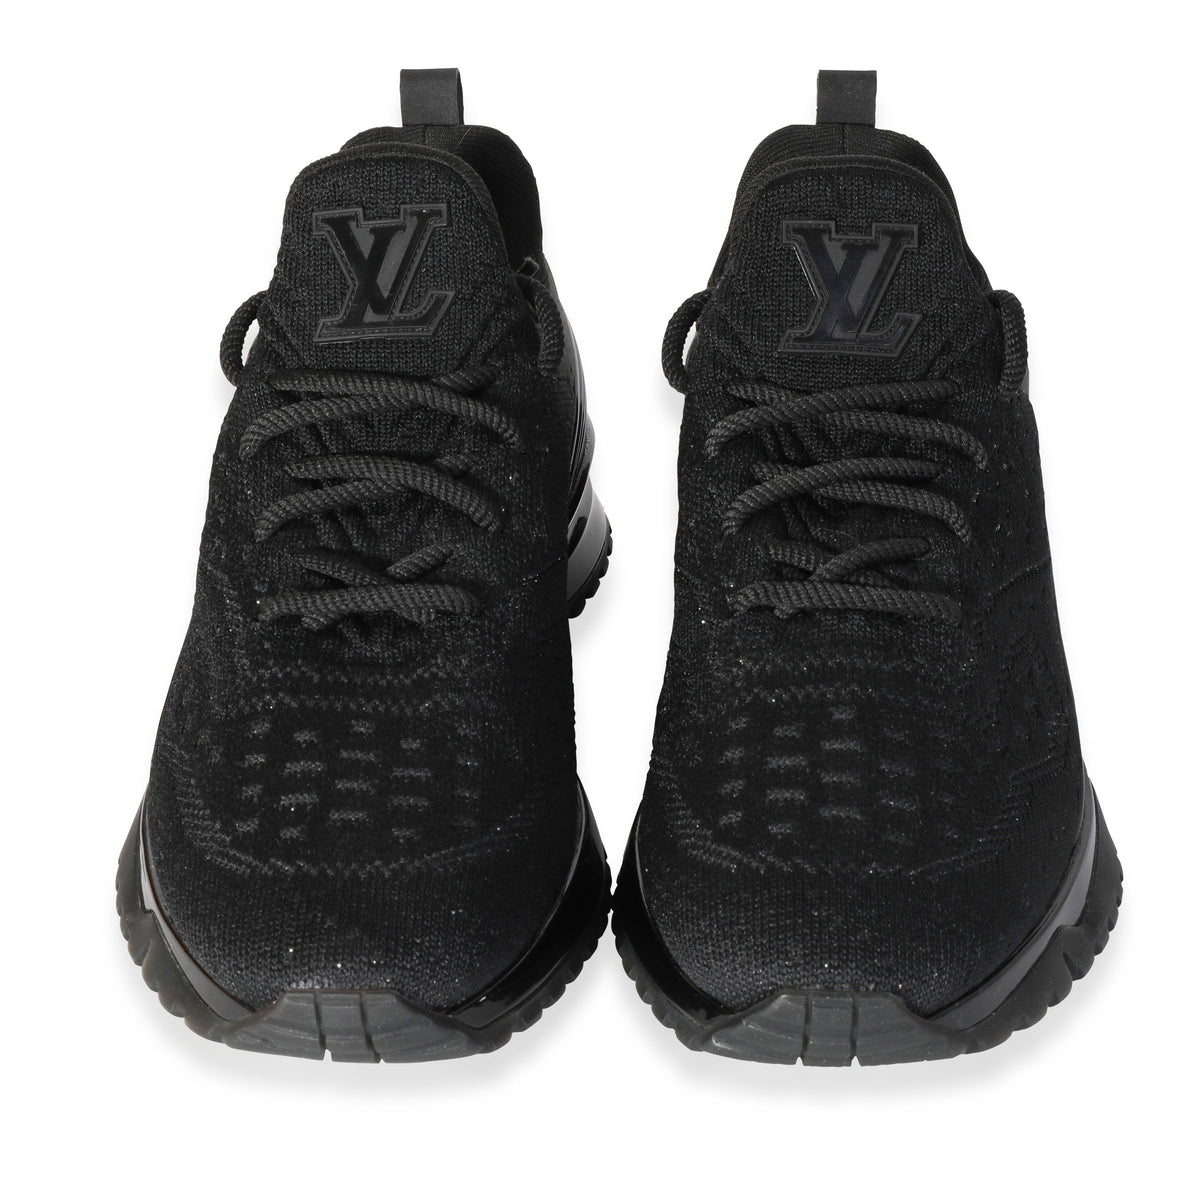 Louis Vuitton, Shoes, Louis Vuitton Vnr Runner Sneakers